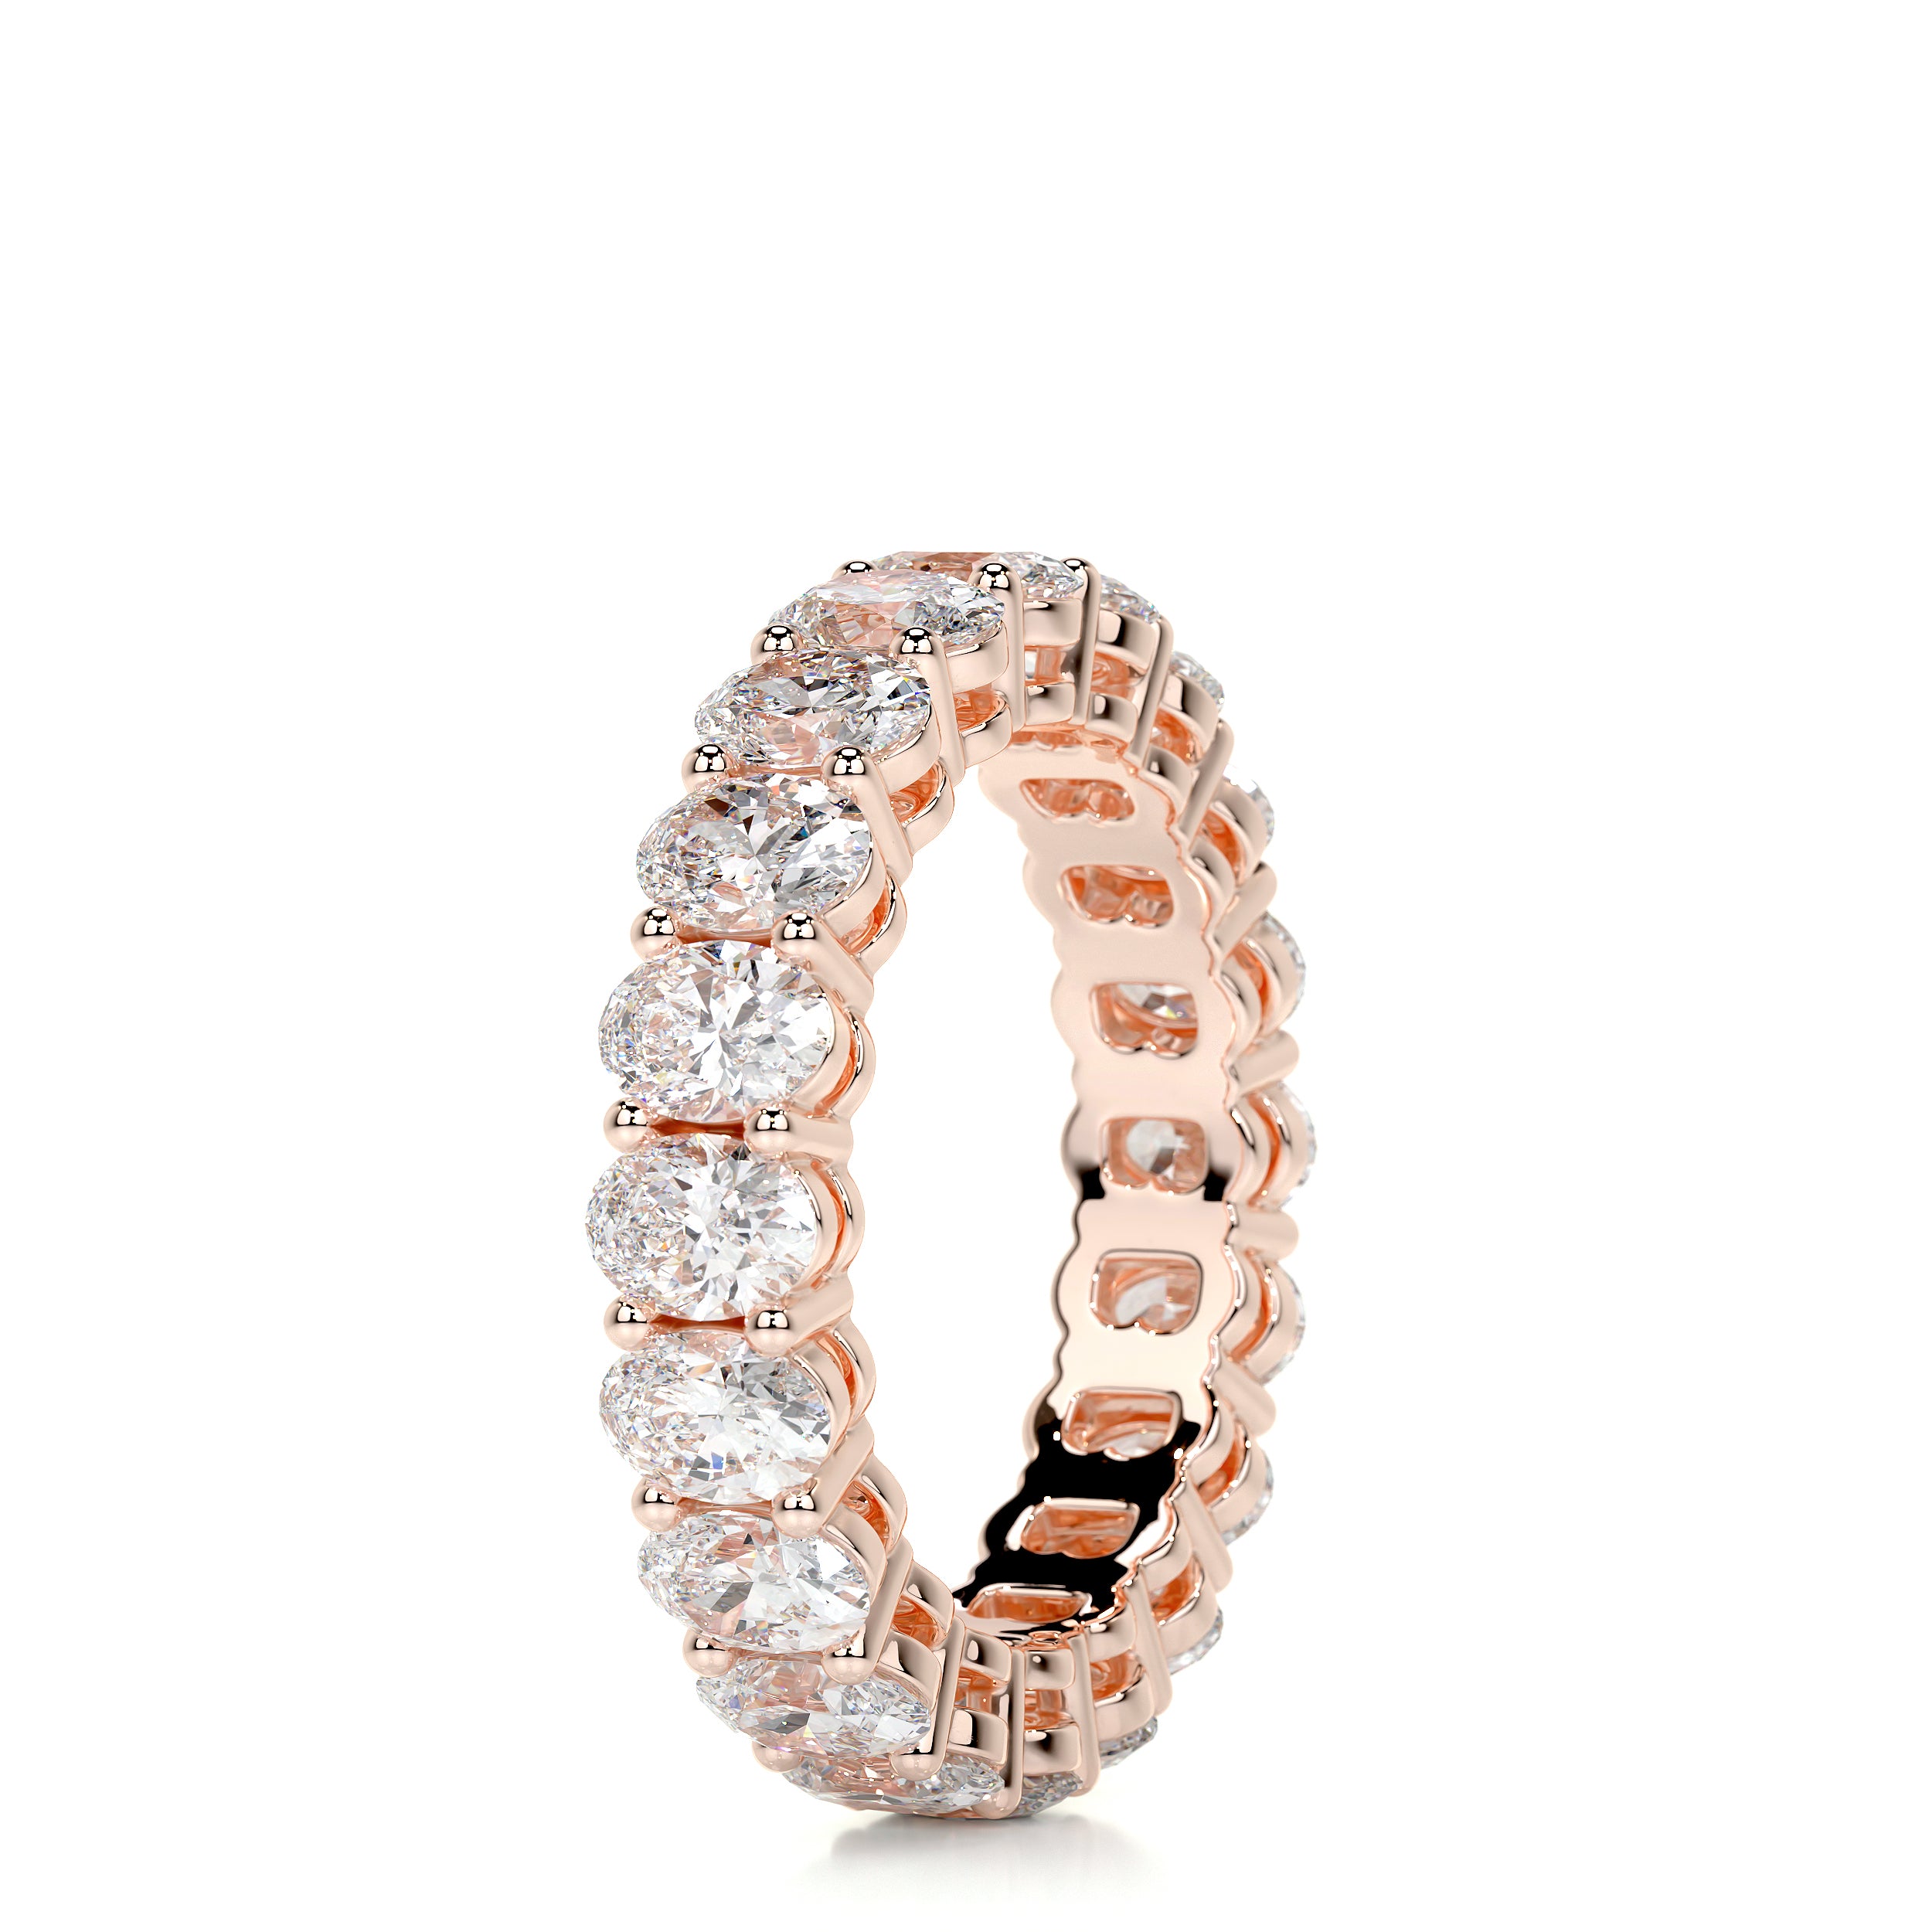 Julia Diamond Wedding Ring -14K Rose Gold